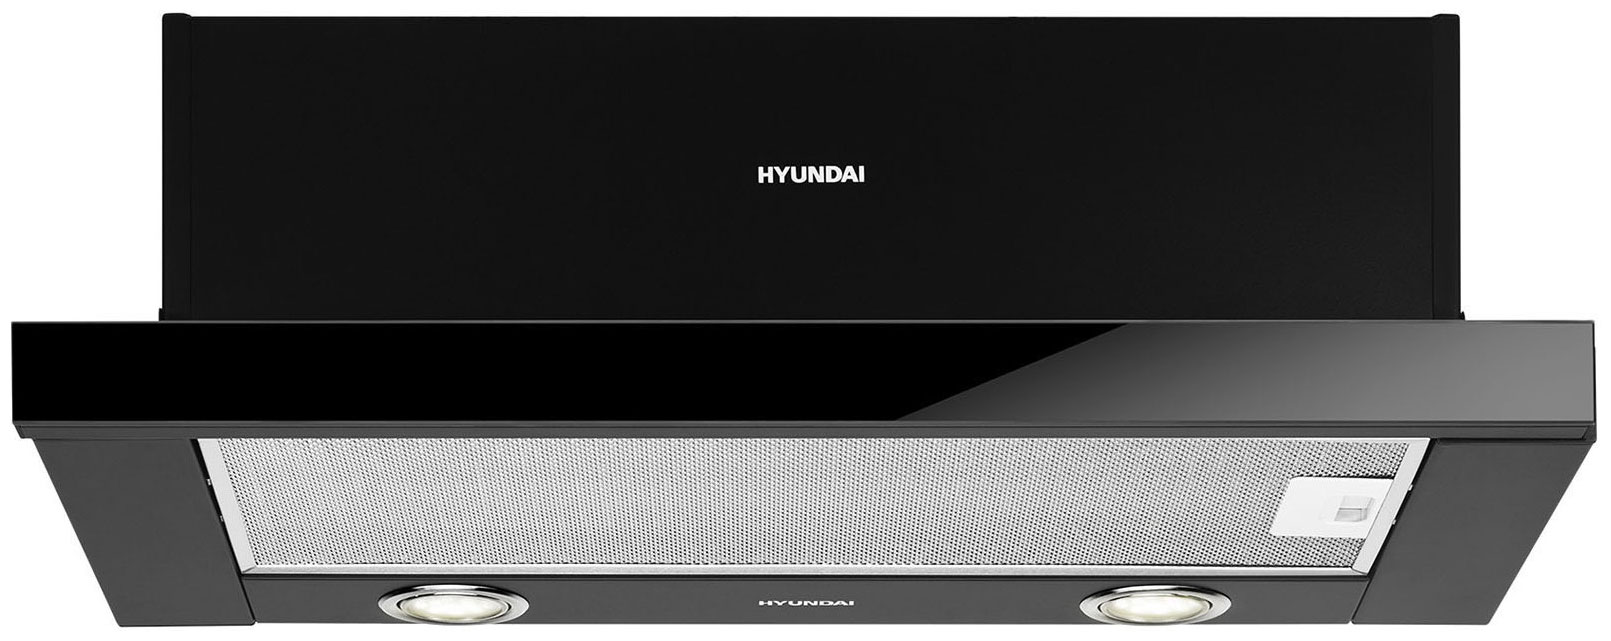 Вытяжка Hyundai HBH 6236 BG черный встраиваемая вытяжка hyundai hbh 6230 ix